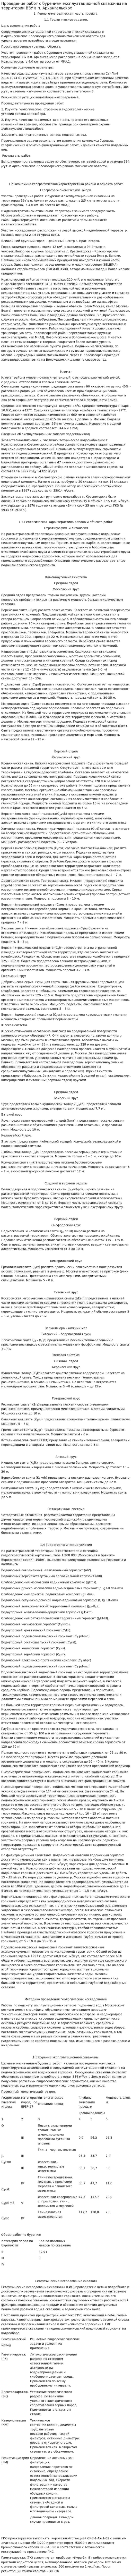 Проведение работ с бурением эксплуатационной скважины на территории ВЗУ в п. Архангельское